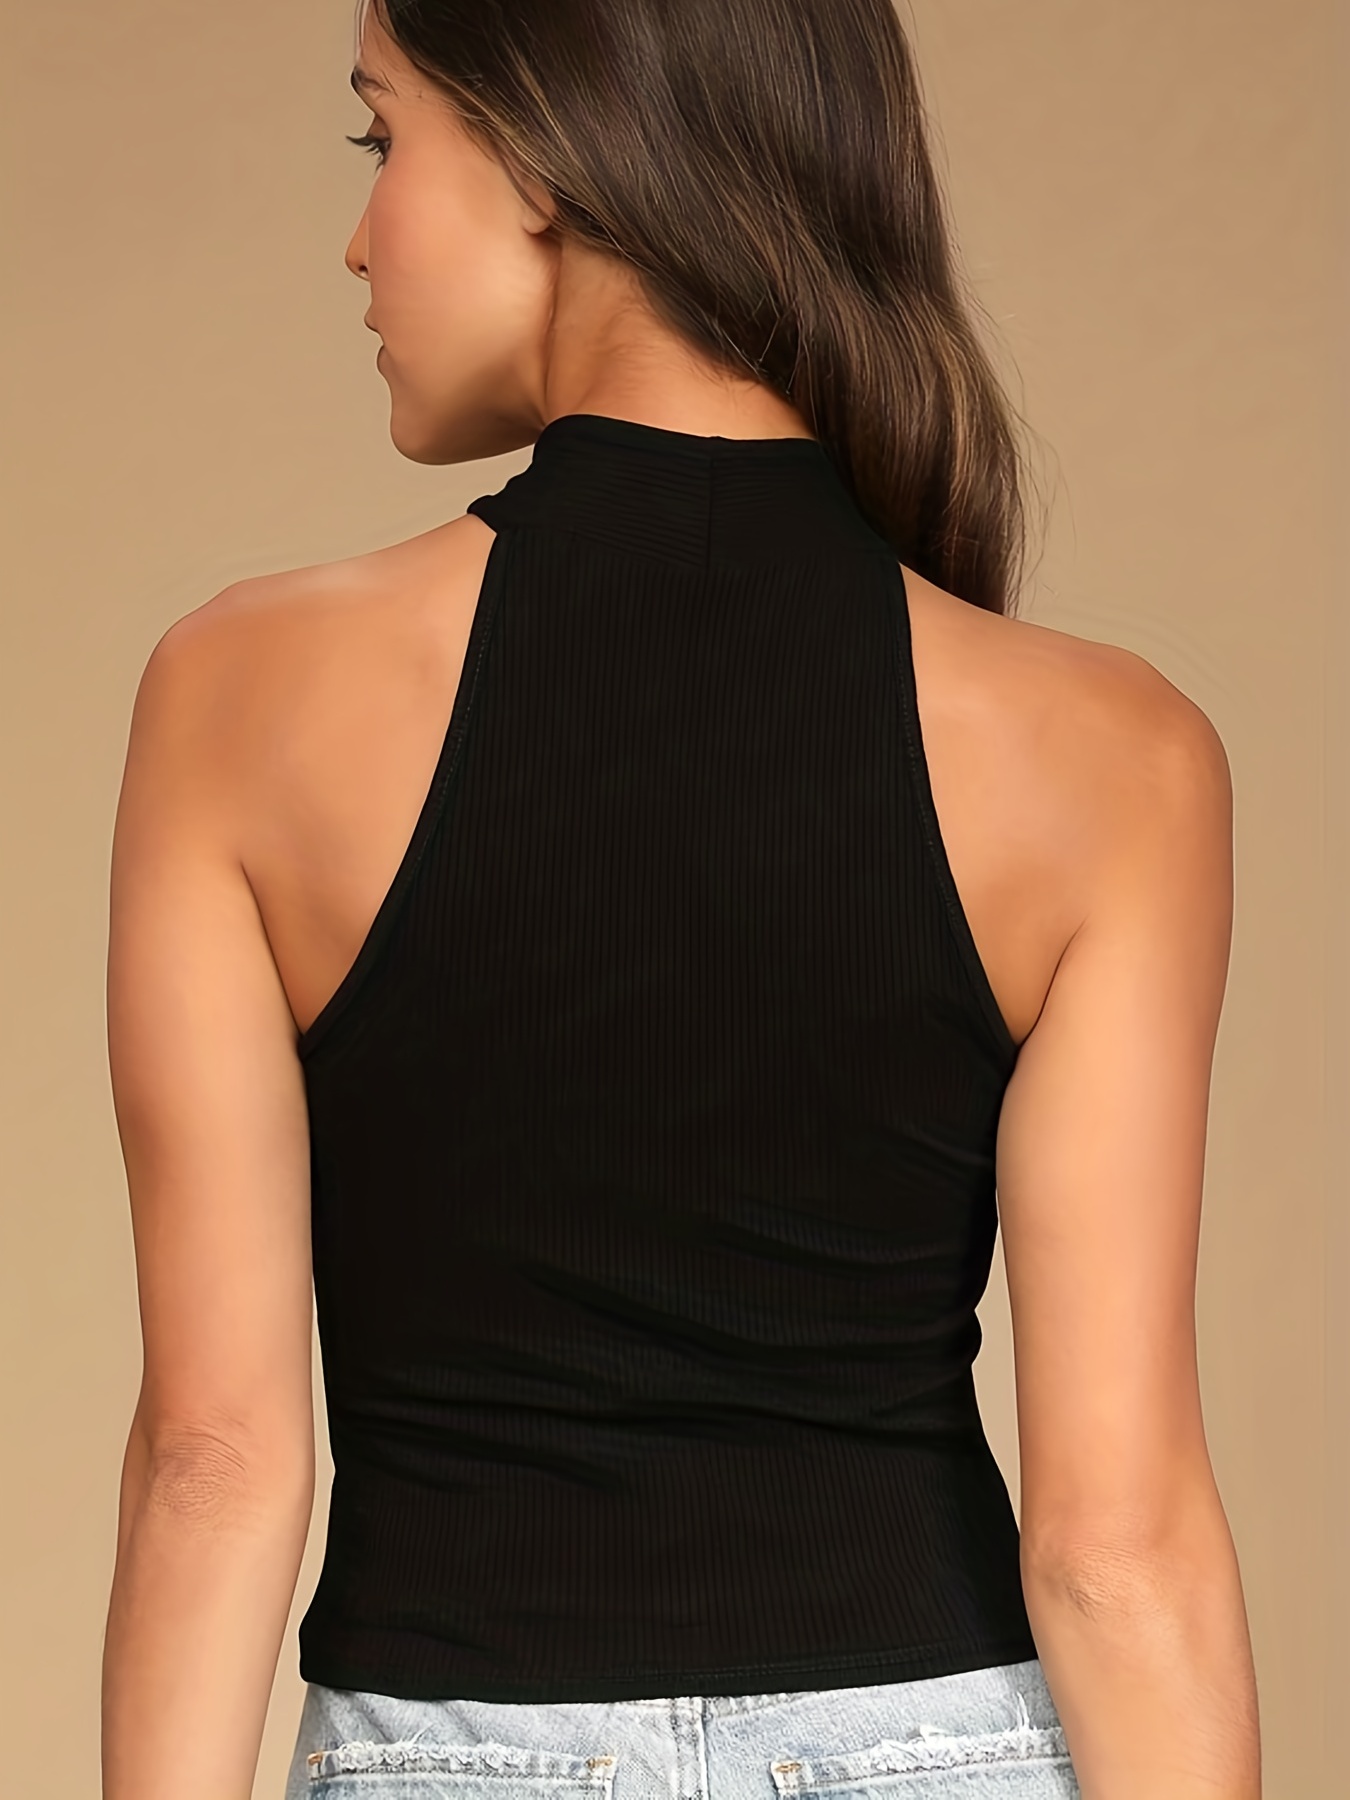 Halter neck bodysuit, Tops, Women's